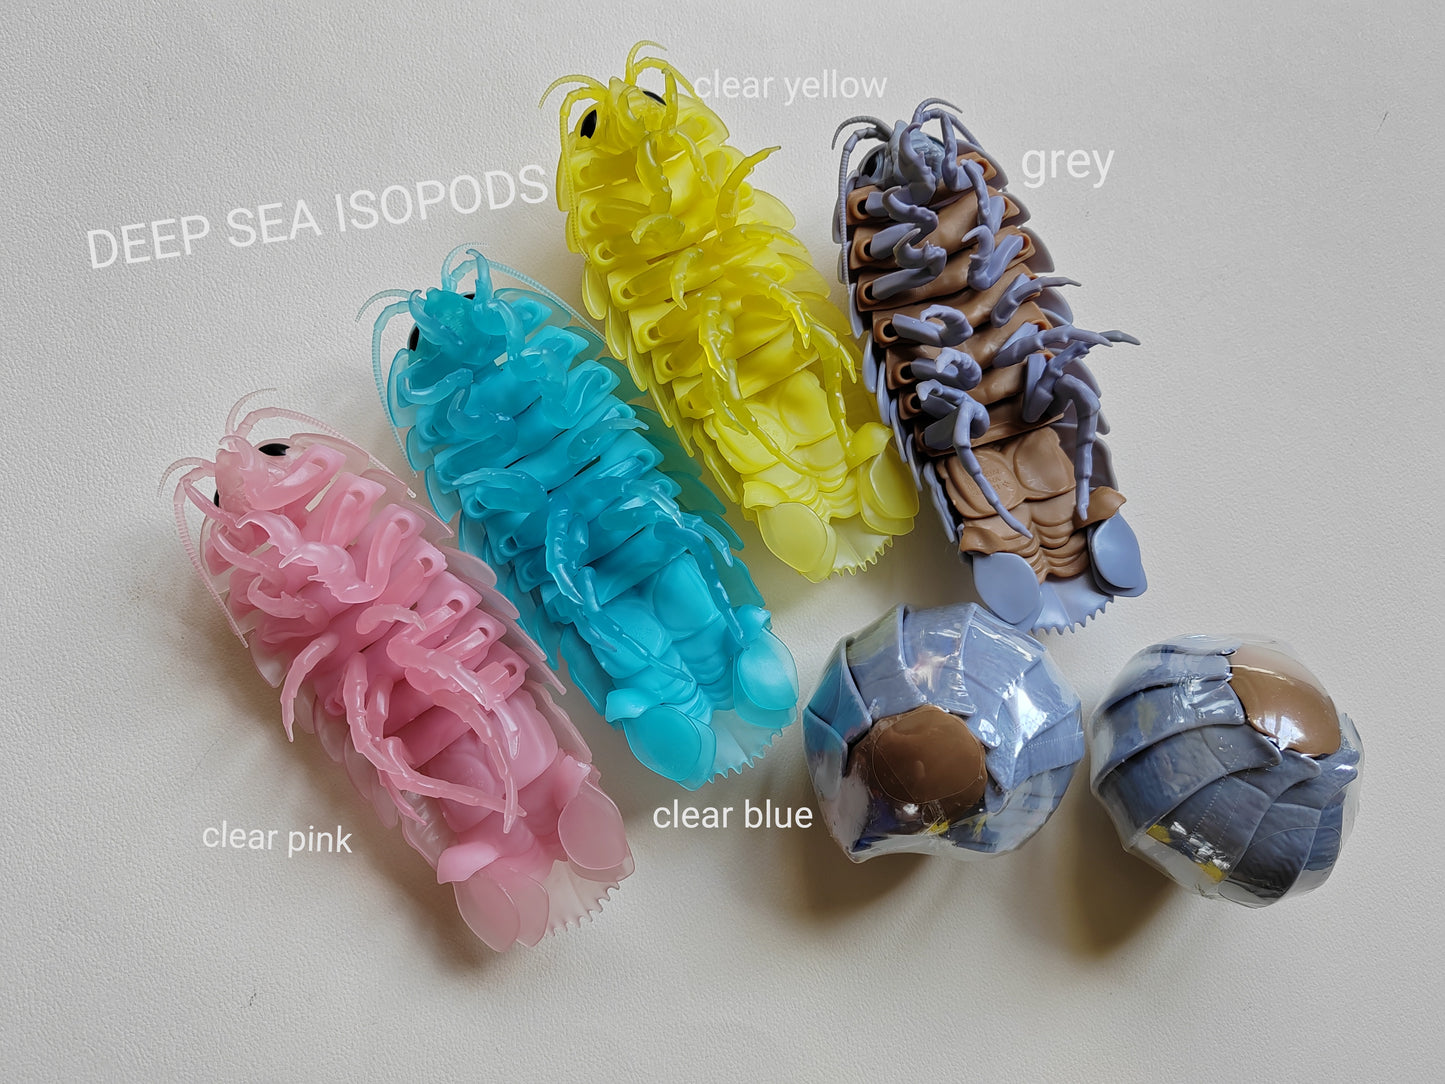 Dangomushi - Isopod, Woodlouse, Pillbug figures! Various options, Japanese exclusives.